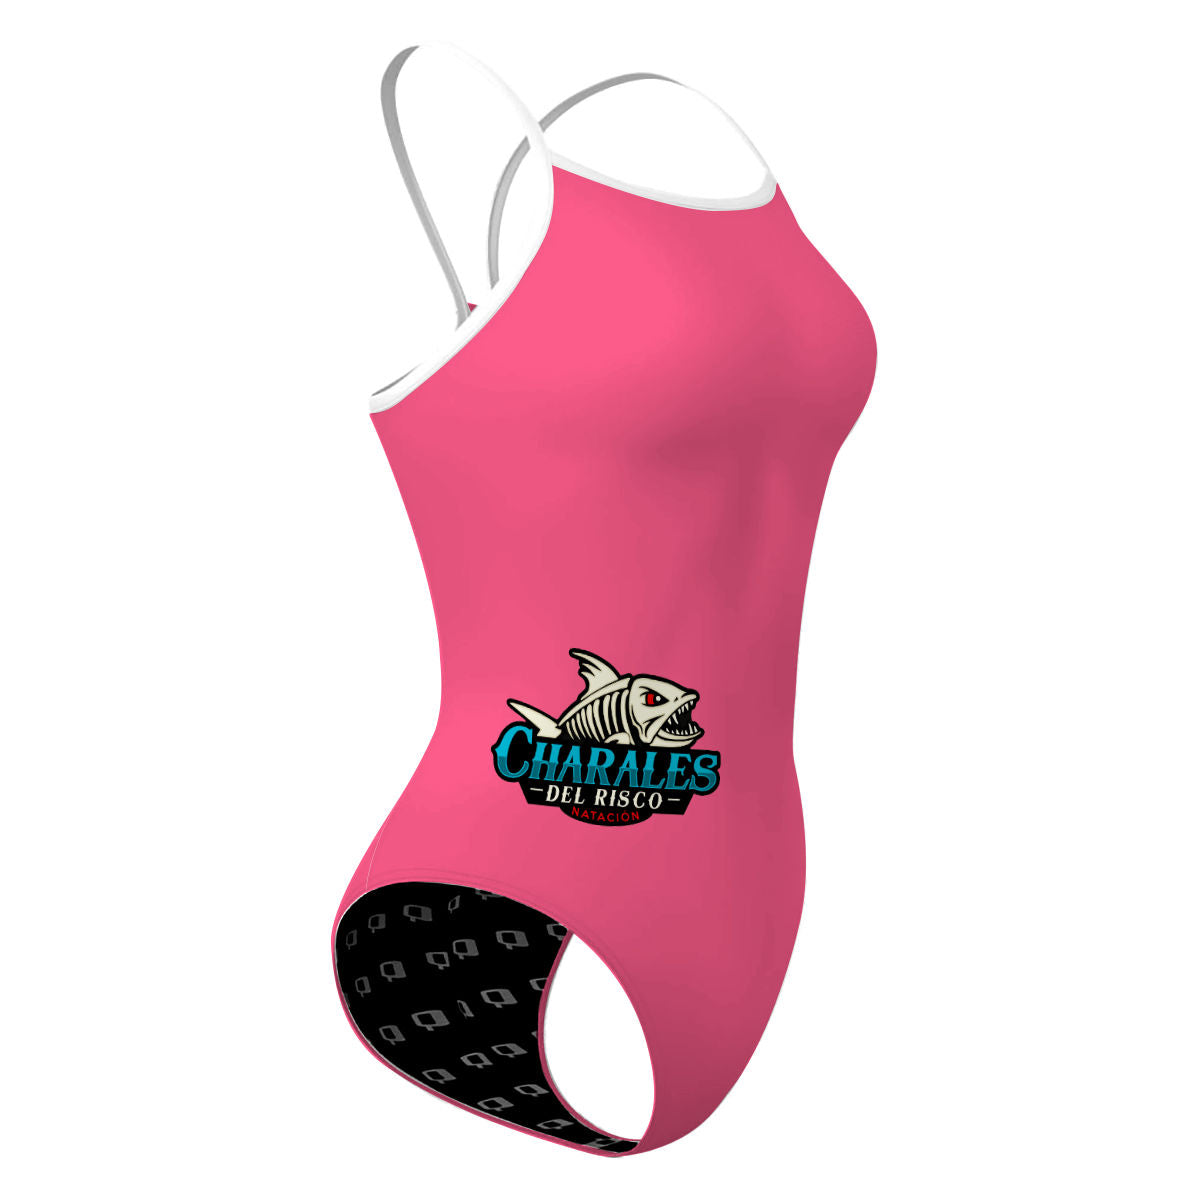 Charales Skinny Strap - Skinny Strap Swimsuit